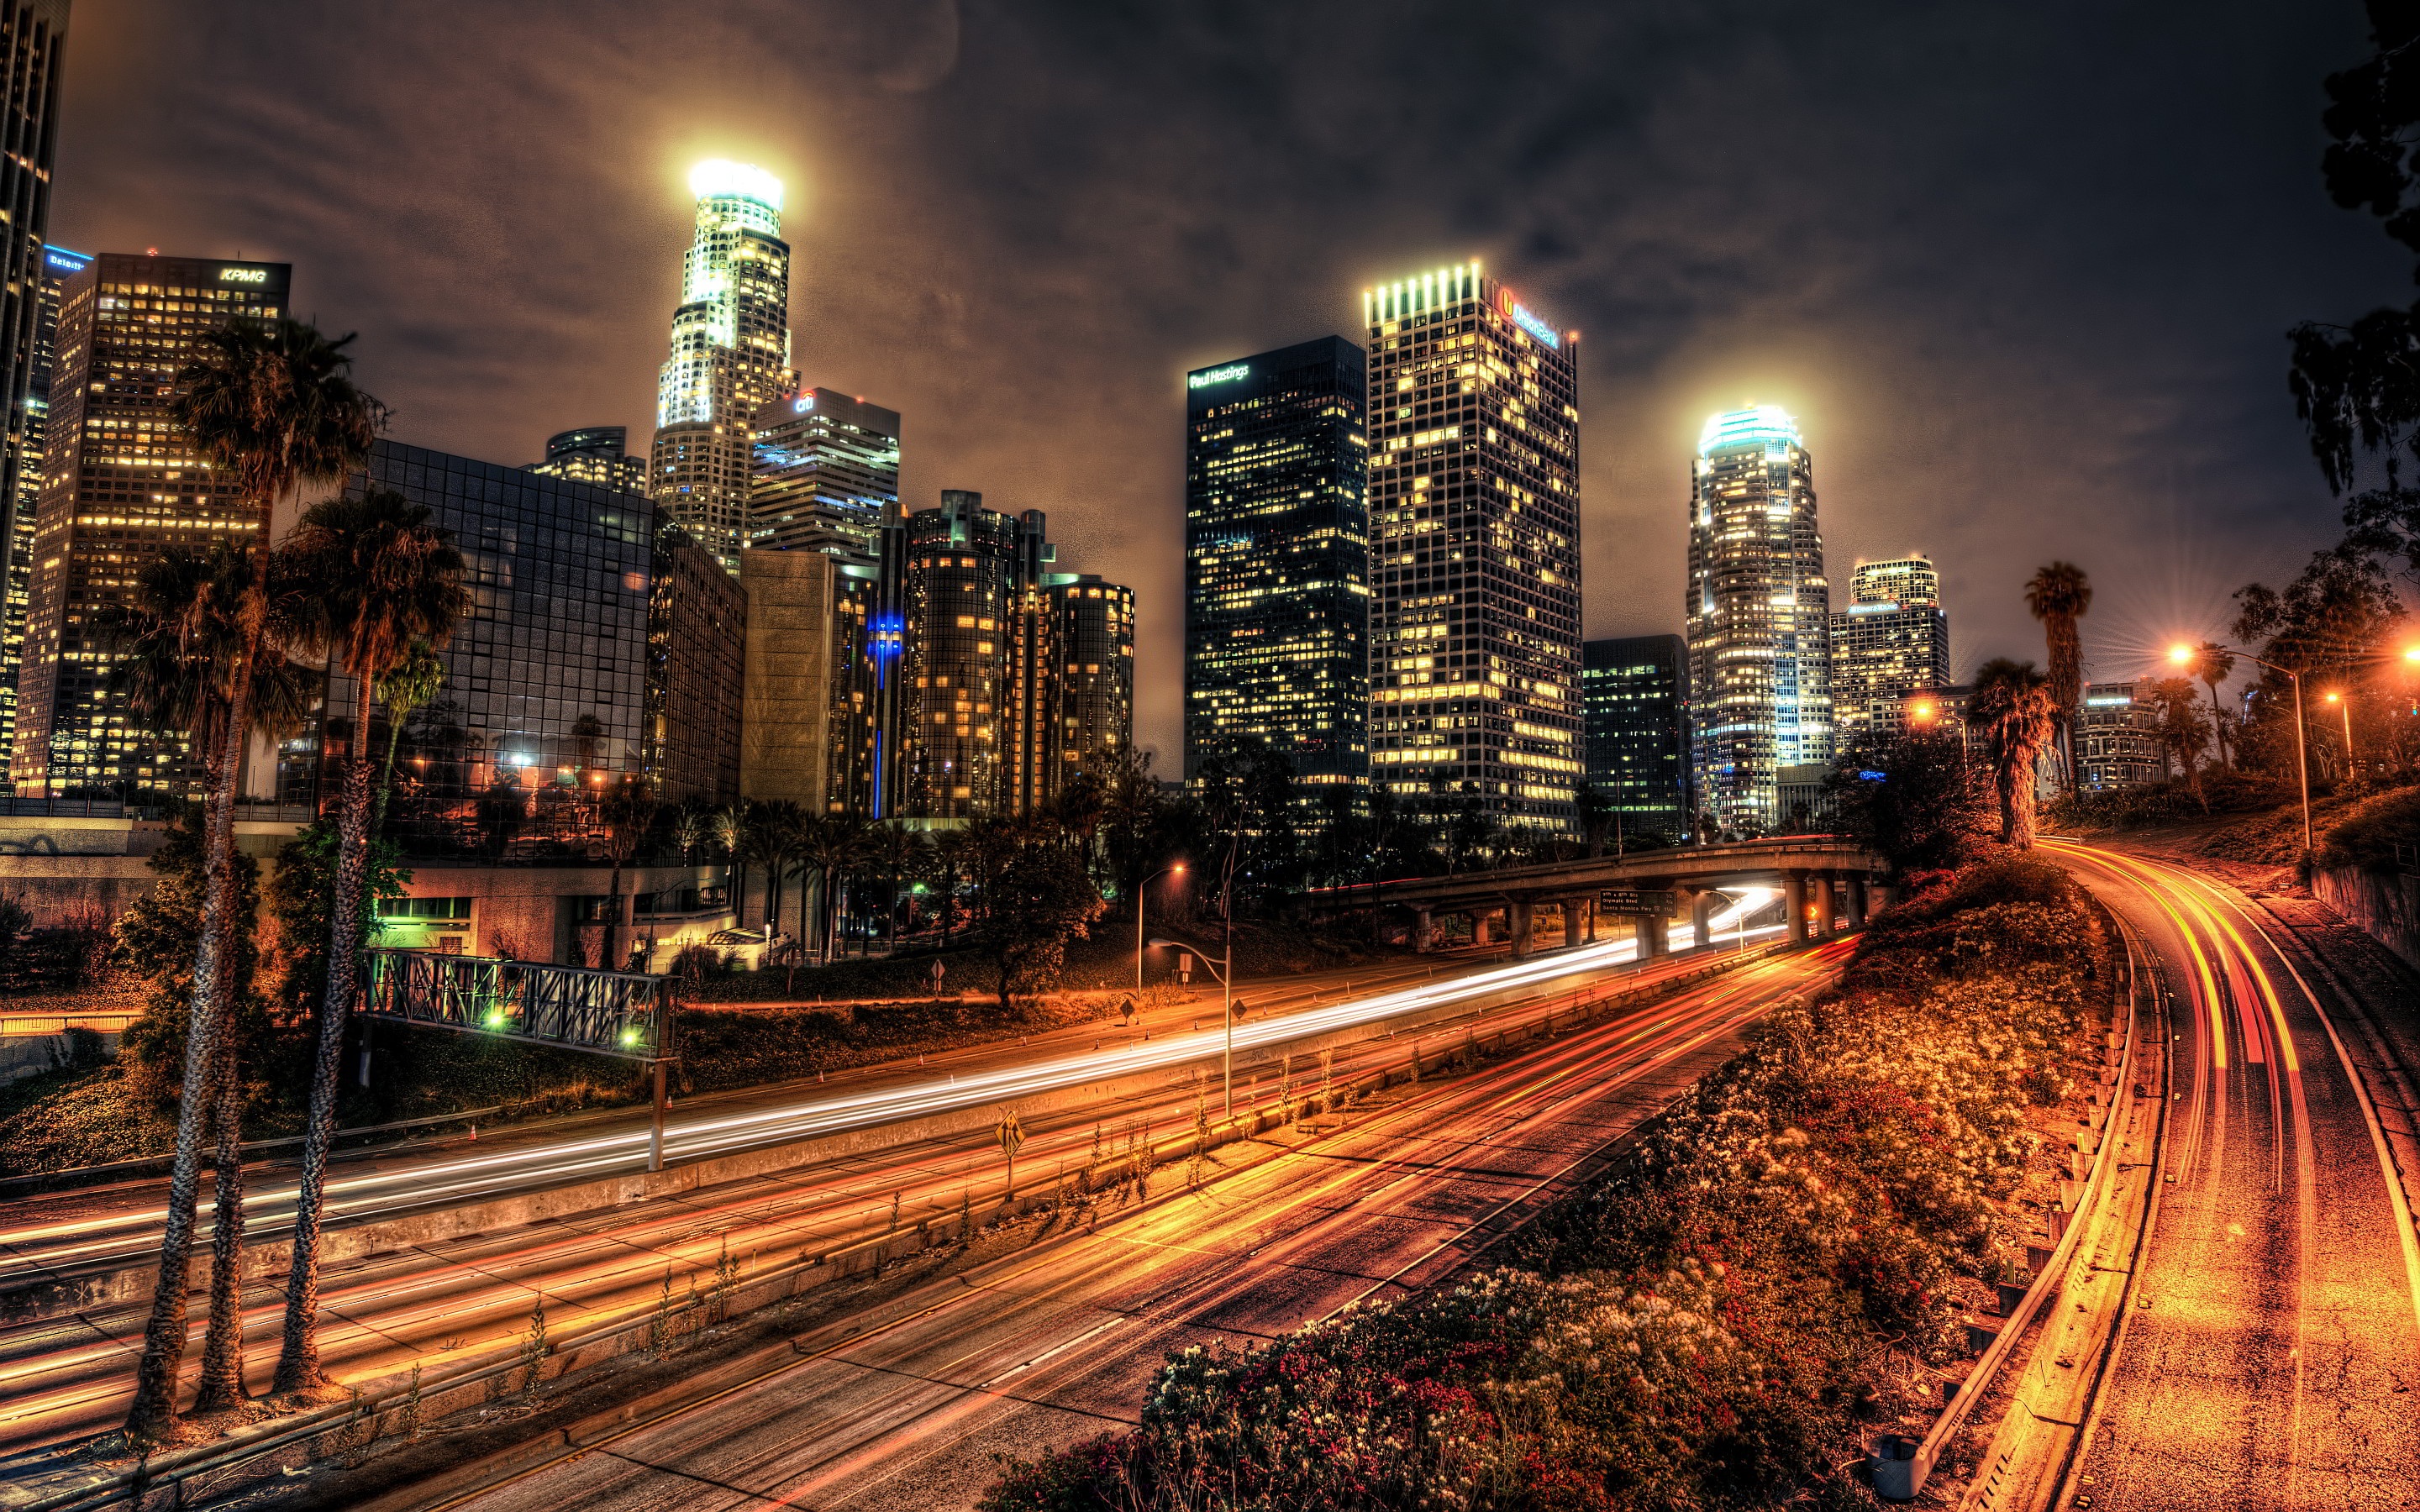 Bạn muốn nhìn ngắm tòa nhà chọc trời của Los Angeles về đêm một cách chân thật nhất? Đồng hành với chúng tôi và tải ngay bức ảnh Los Angeles Downtown Skyline đêm hạng Desktop Los Angeles hoàn toàn miễn phí để có trải nghiệm thật sống động và đầy sắc màu. Hãy cùng ngắm nhìn thị trấn sáng rực trong ánh đèn lung linh của đêm tại màn hình máy tính của bạn.